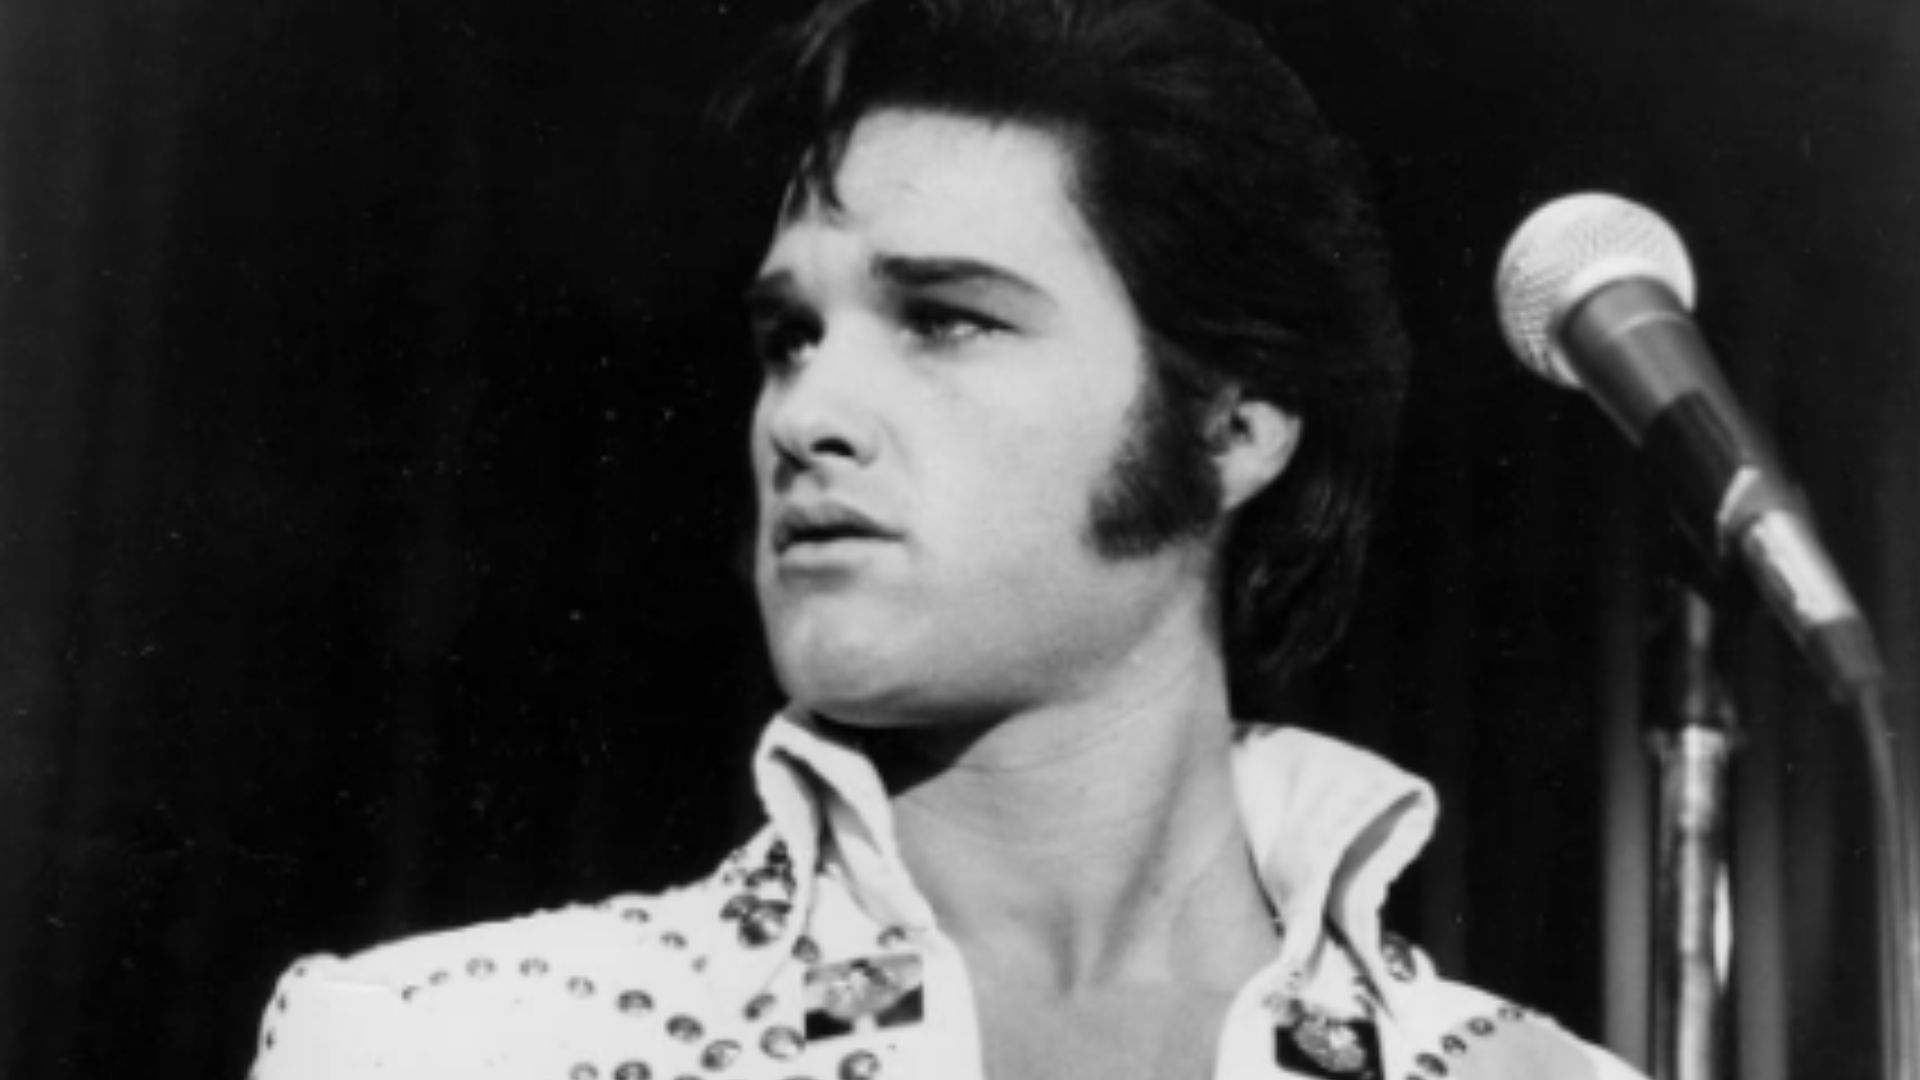 Elvis did not die